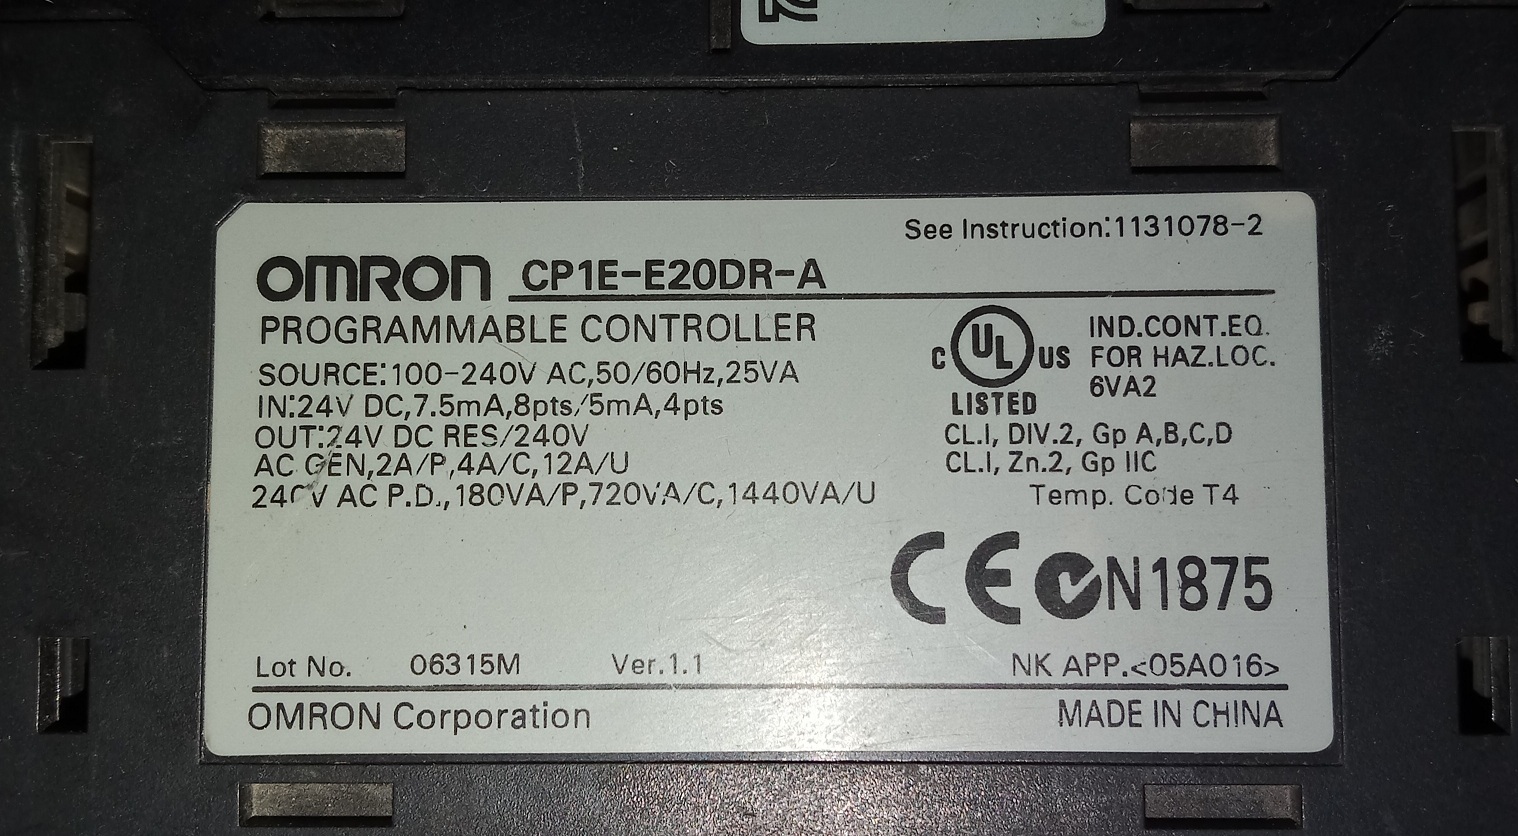 OMRON CONTOMRON ROLLER CP1E-E20DR-A